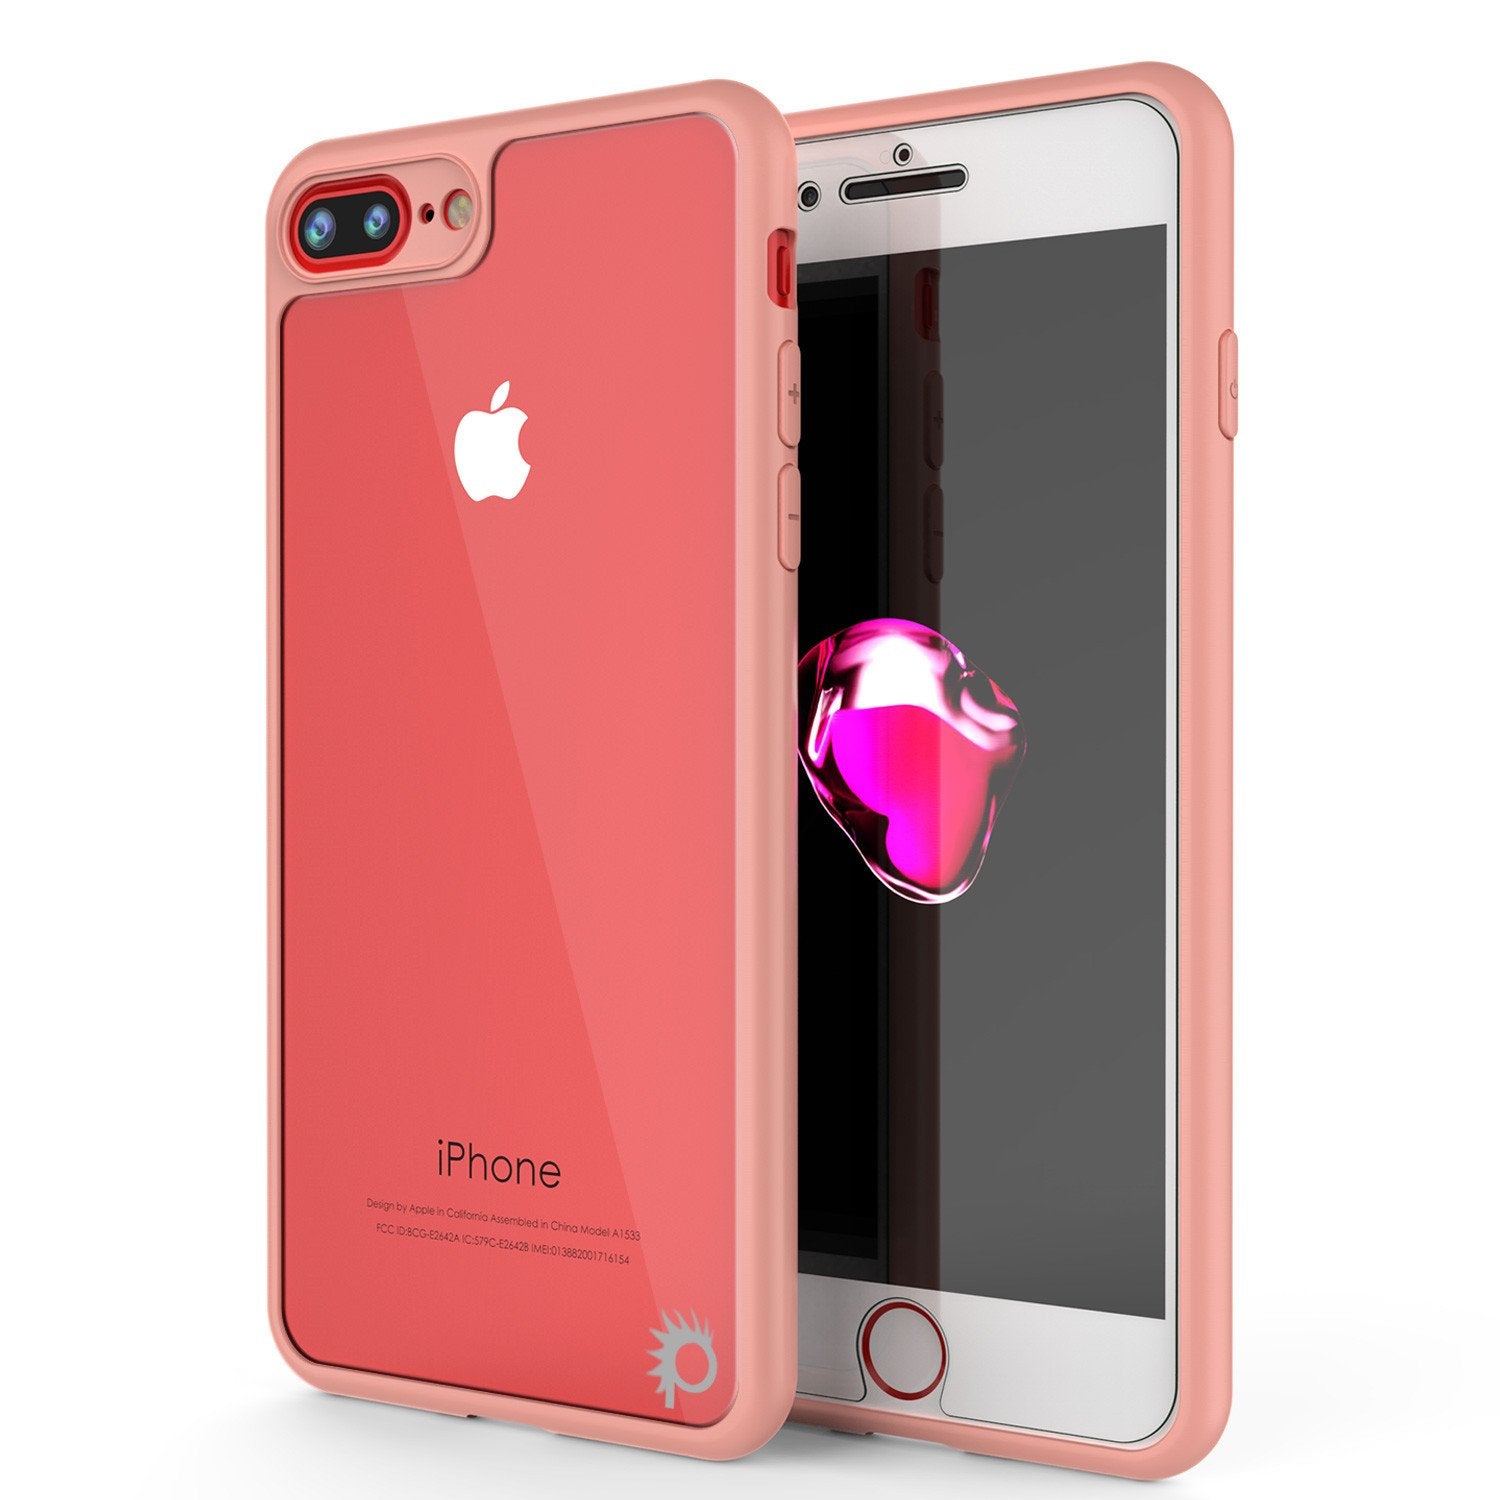 IPhone 8 Plus Rose Gold iPhone 8 Pink iPhone 8 Plus iPhone 